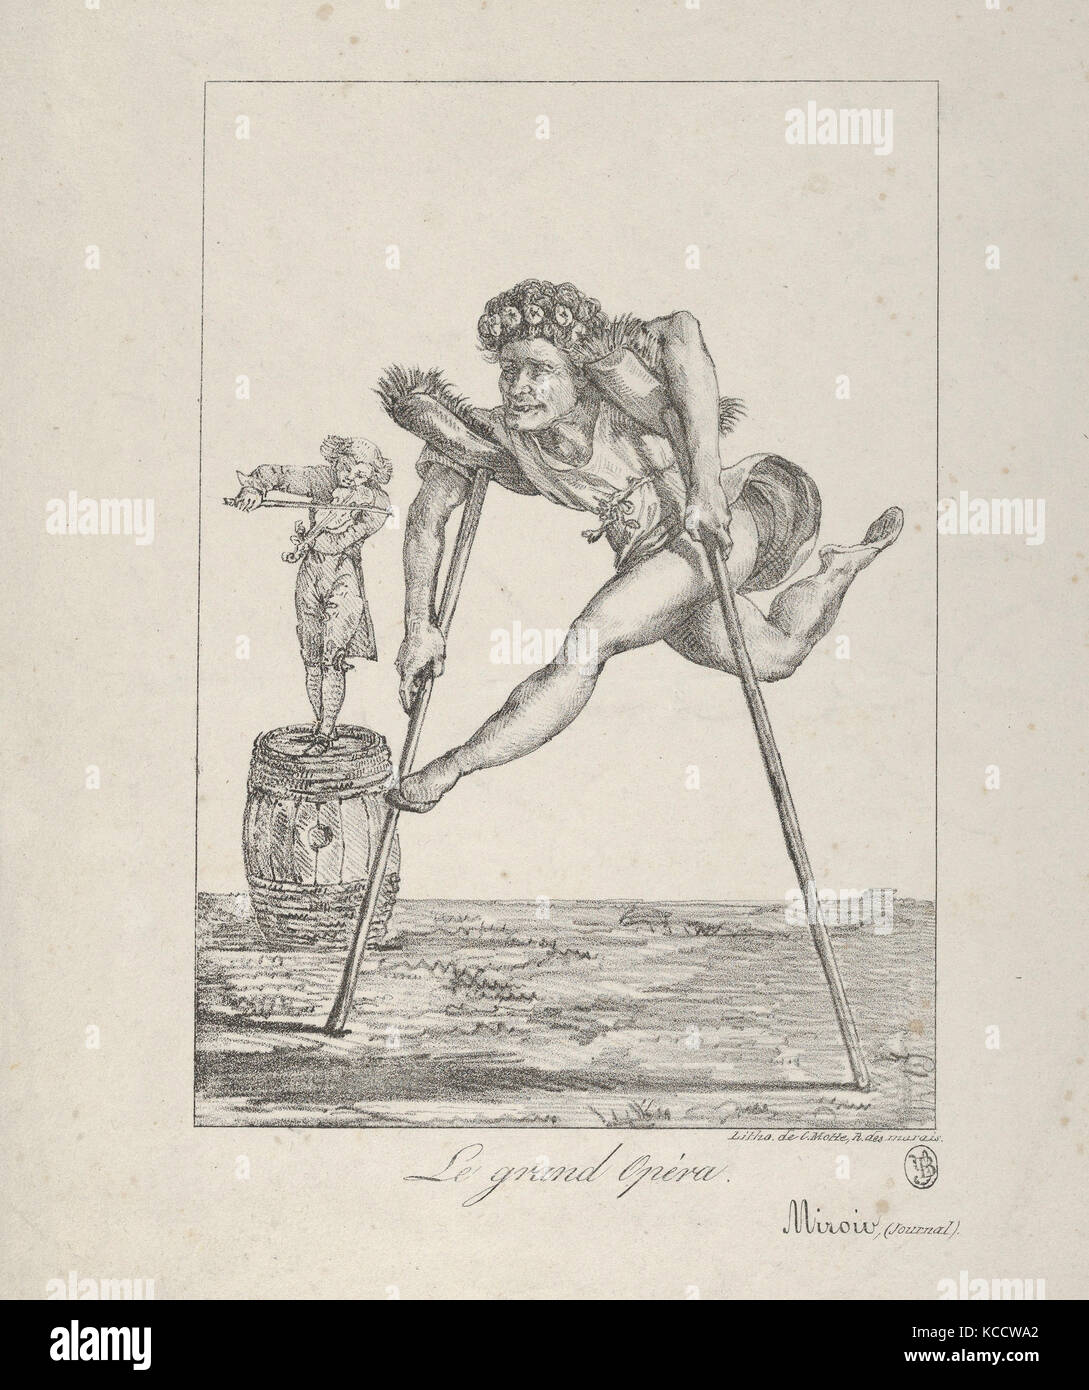 Le Grand Opera, 1821, lithographie ; deuxième état de deux, feuille : 10 13/16 x 8 9/16 in. (27,5 x 21,8 cm), d'impressions, d'Eugène Delacroix Banque D'Images